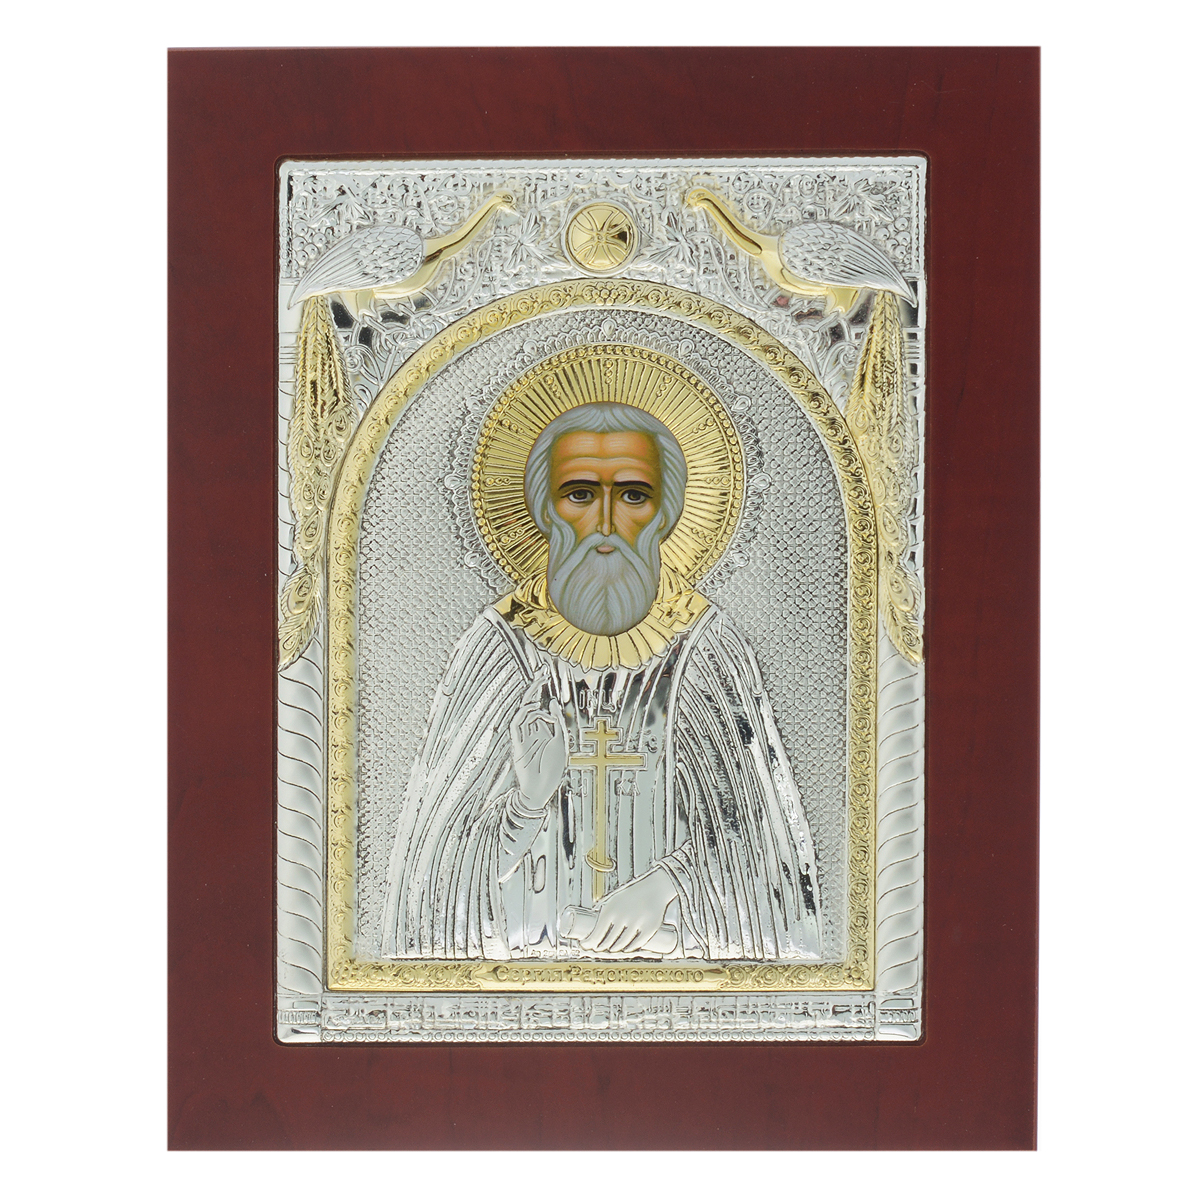 Икона Святого Сергия Радонежского, 23 см х 18 см